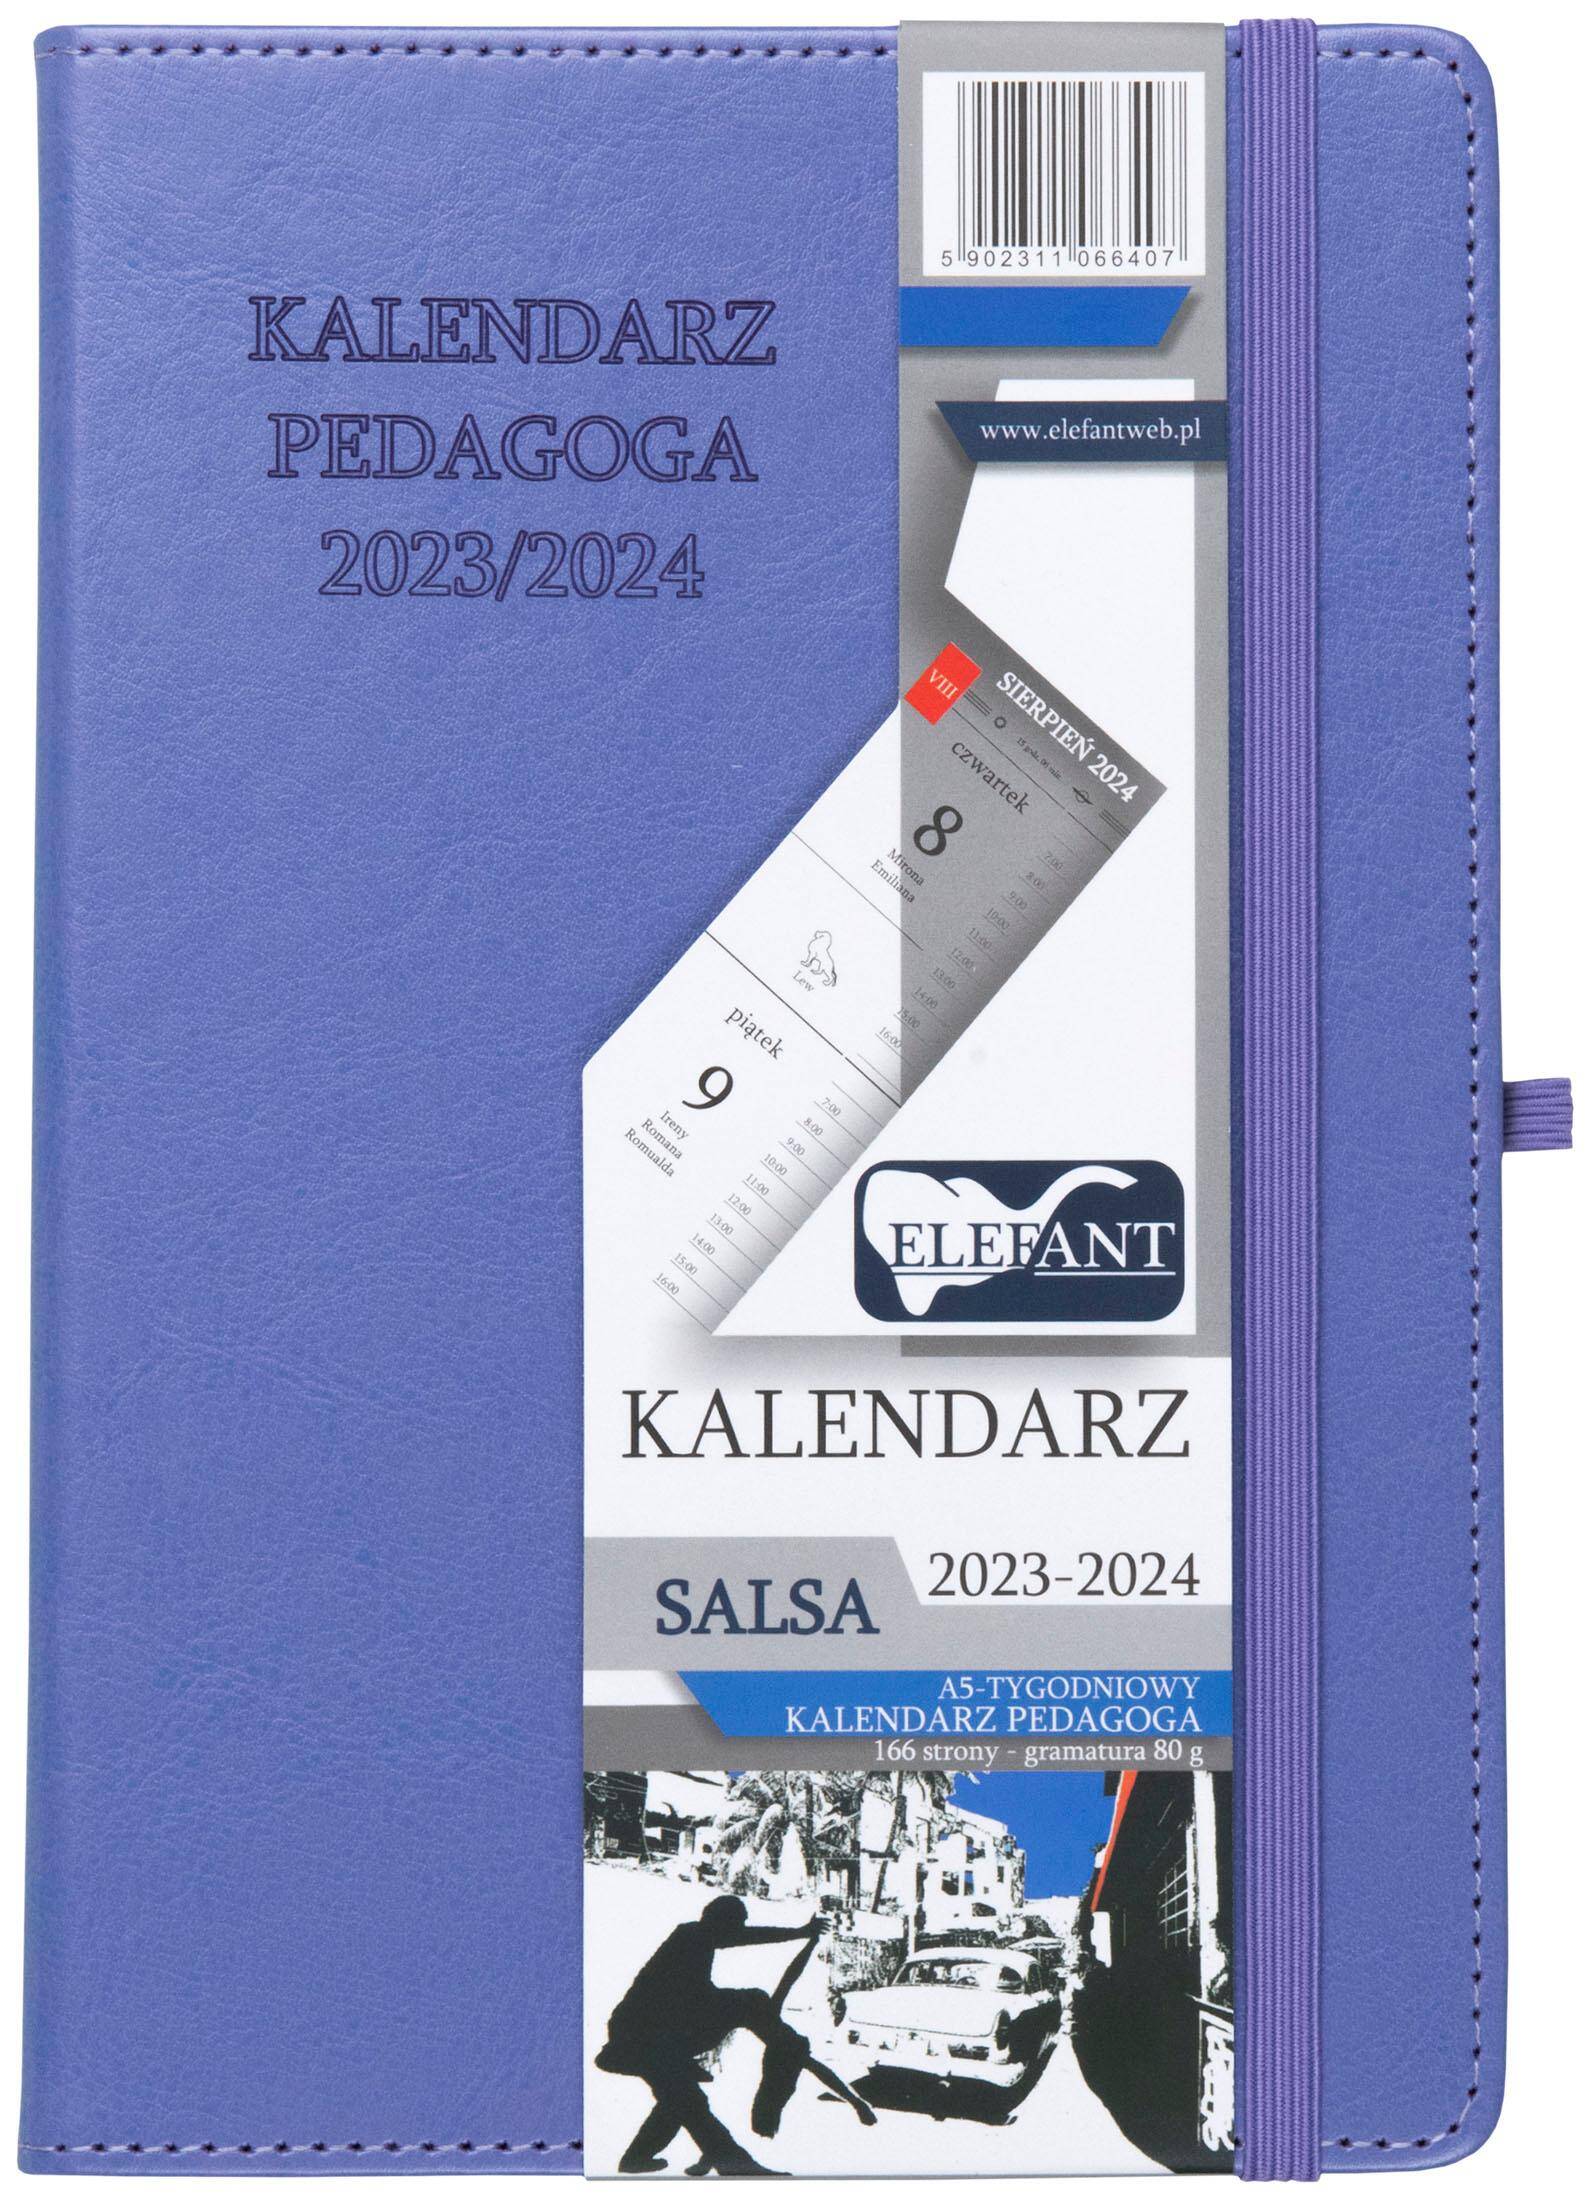 Kalendarz Pedagoga 2023/2024 salsa A5 tygodniowy fioletowy